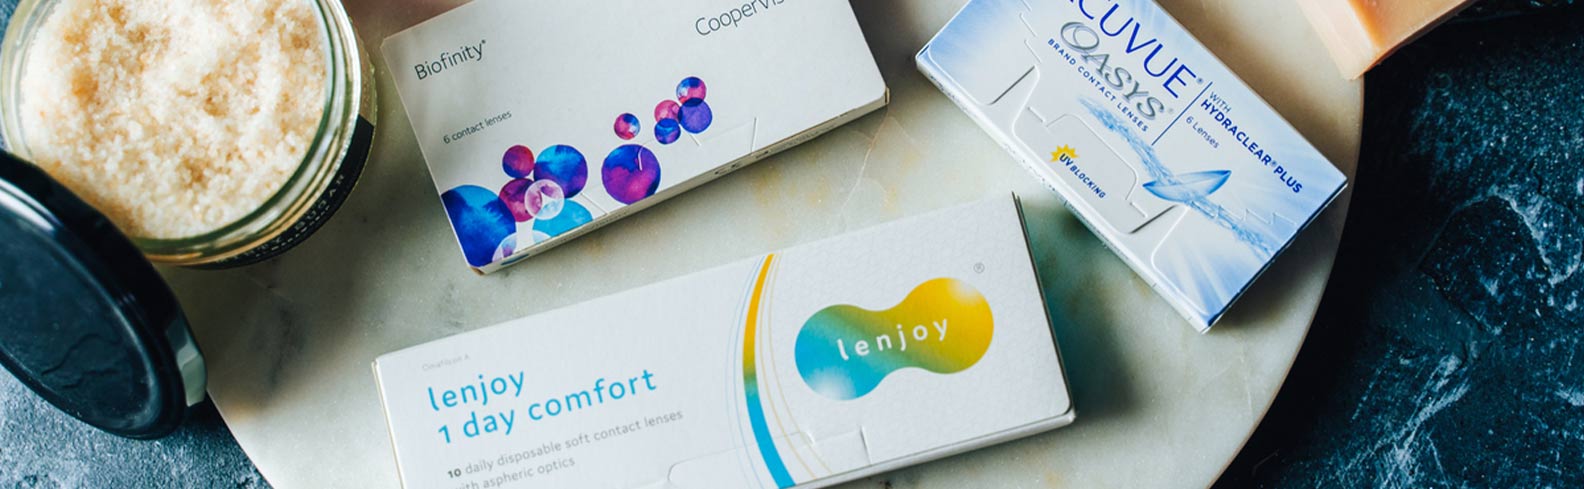 confezioni di lenti a contatto Lenjoy, Biofinity e Acuvue Oasys